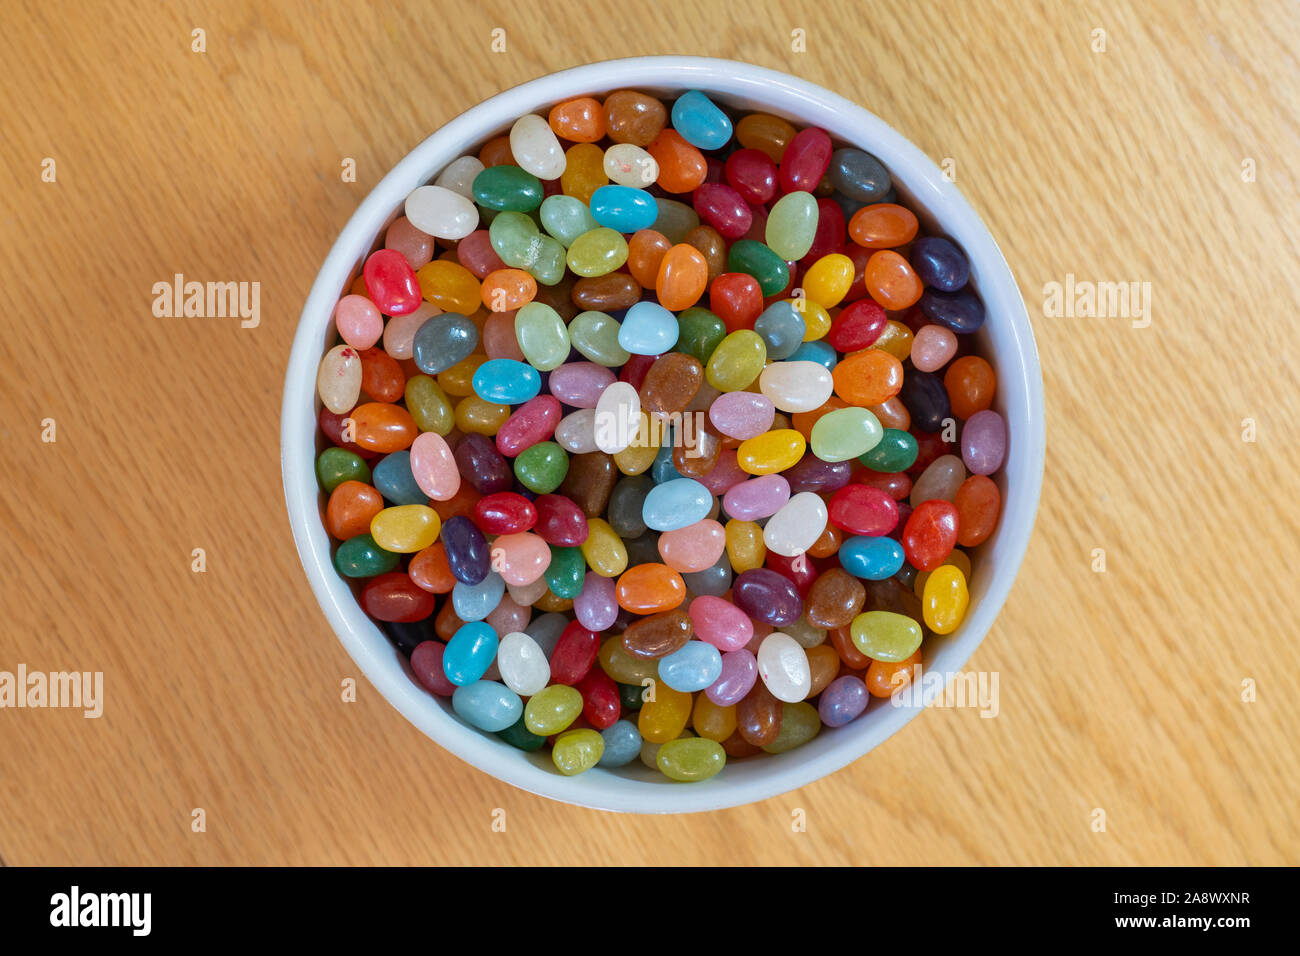 Ein Sortiment von bunten Jelly Beans in einer weißen Schüssel - Süßigkeiten oder Süßigkeiten Stockfoto